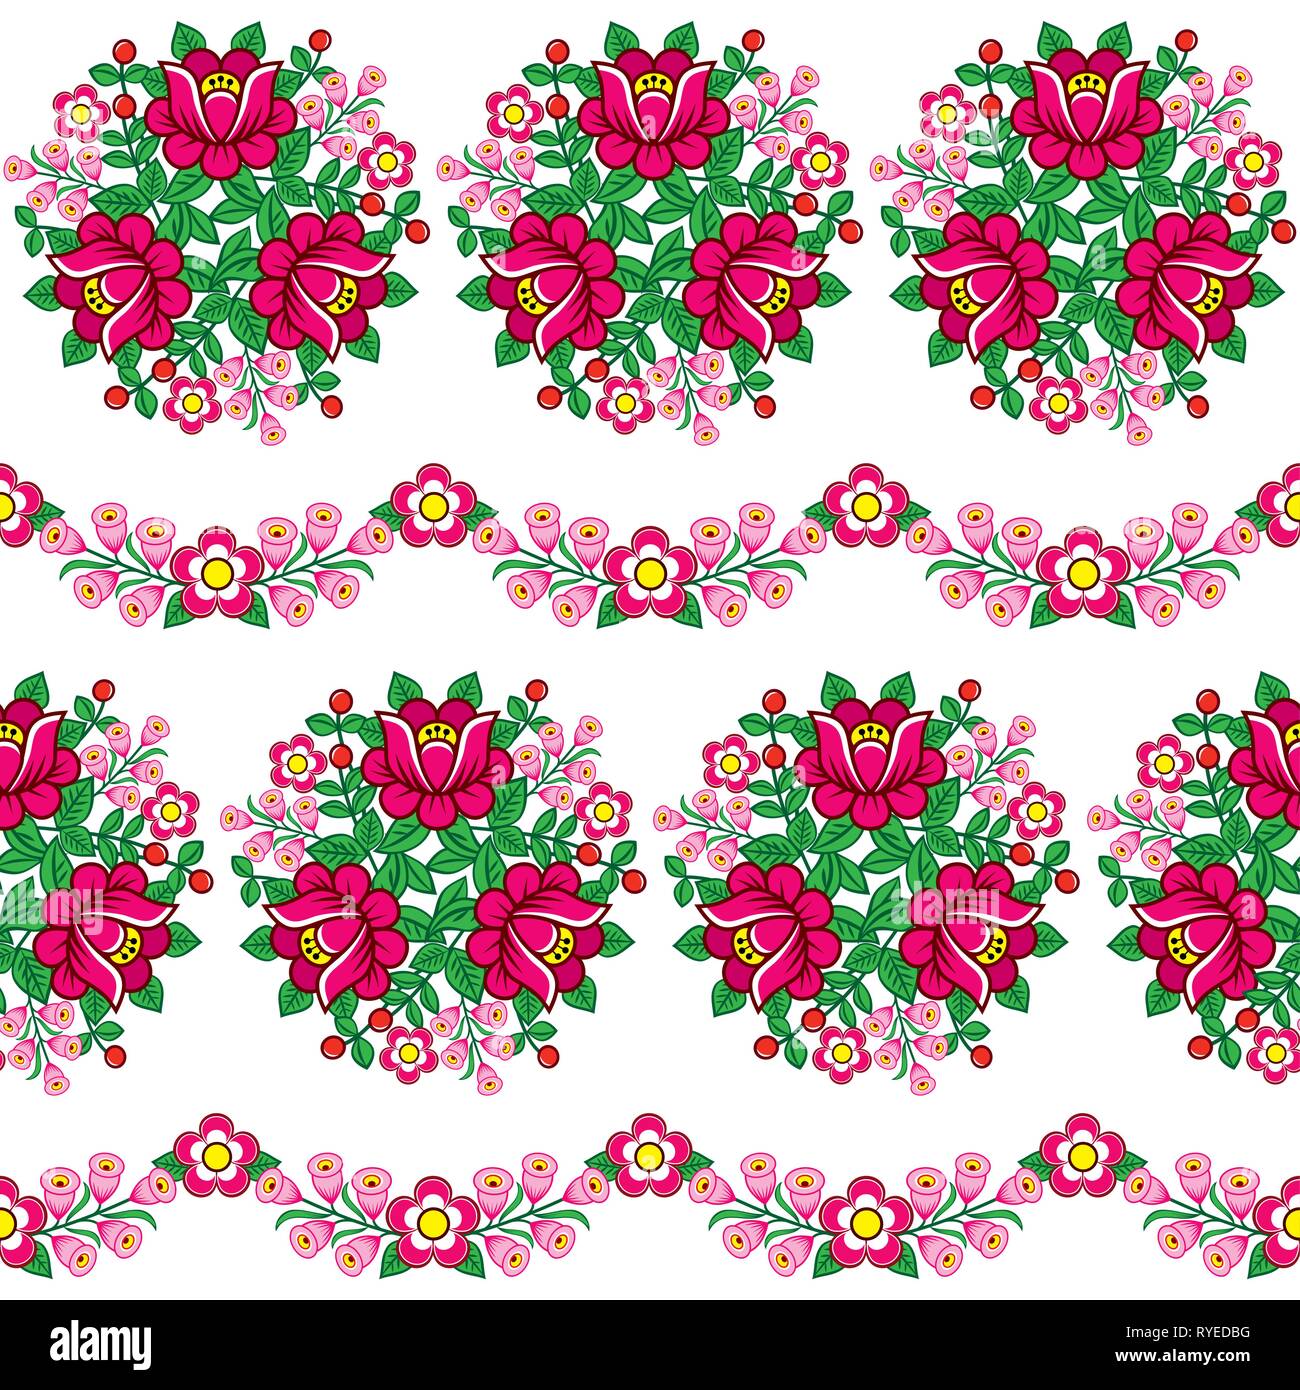 Nahtlose floral Polnischen Volkskunst vector Pattern, niedliche traditionellen Ornamenten mit Blumen von Zalipie, Polen - Textil, Tapeten Design Stock Vektor